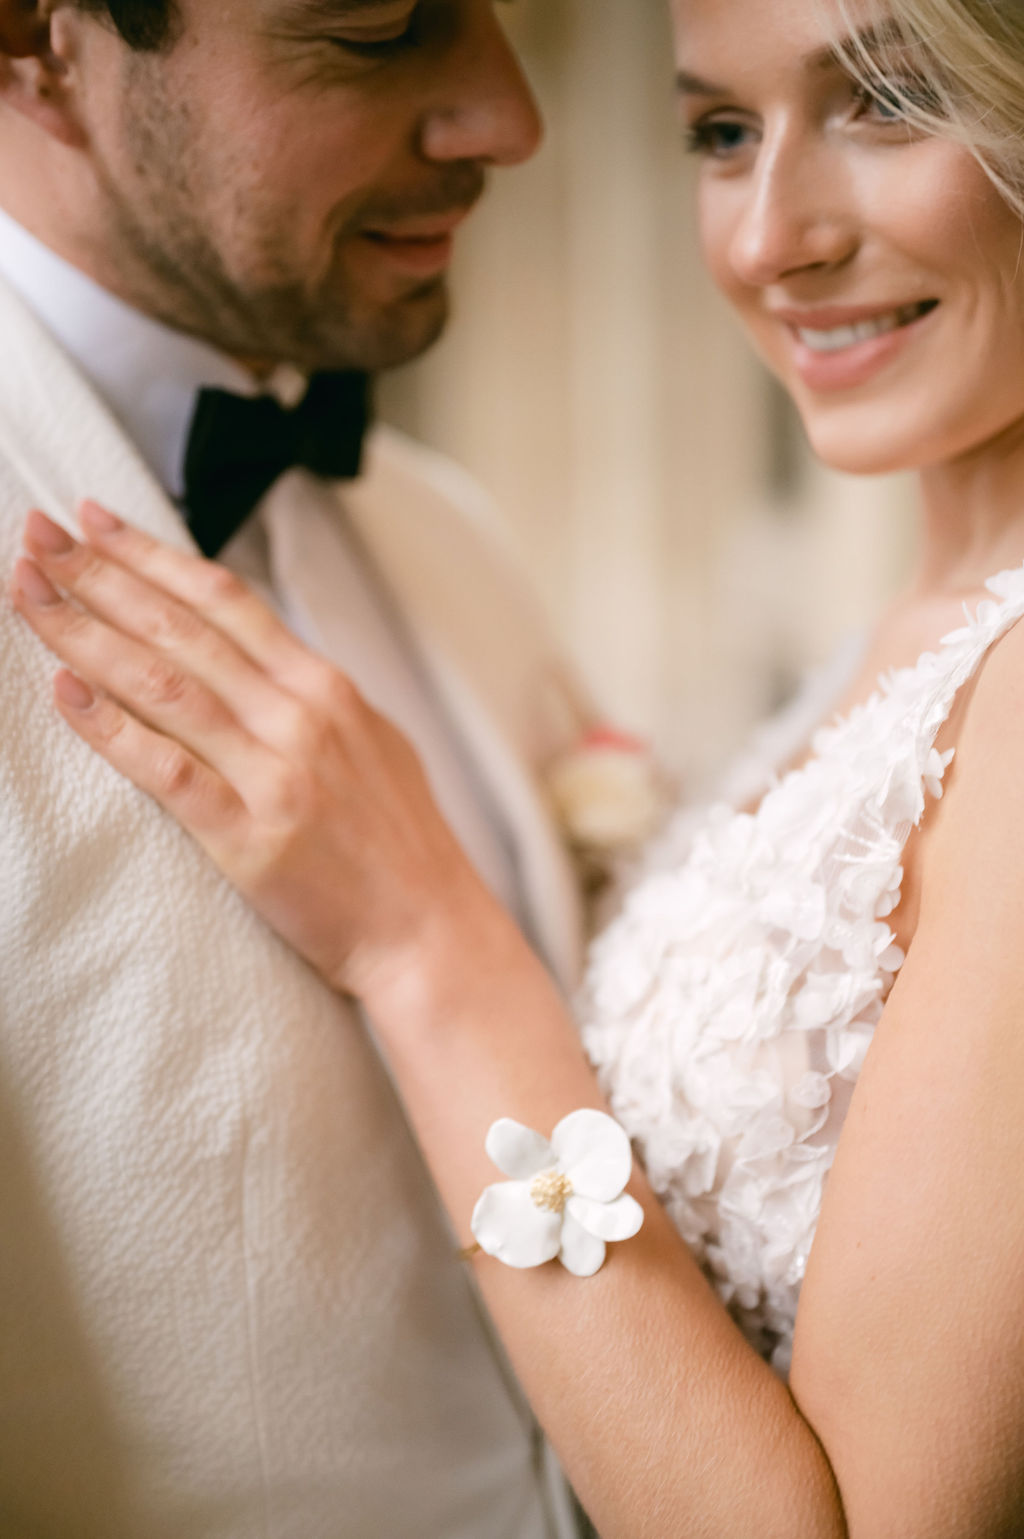 Floral bracelet to match floral wedding dress